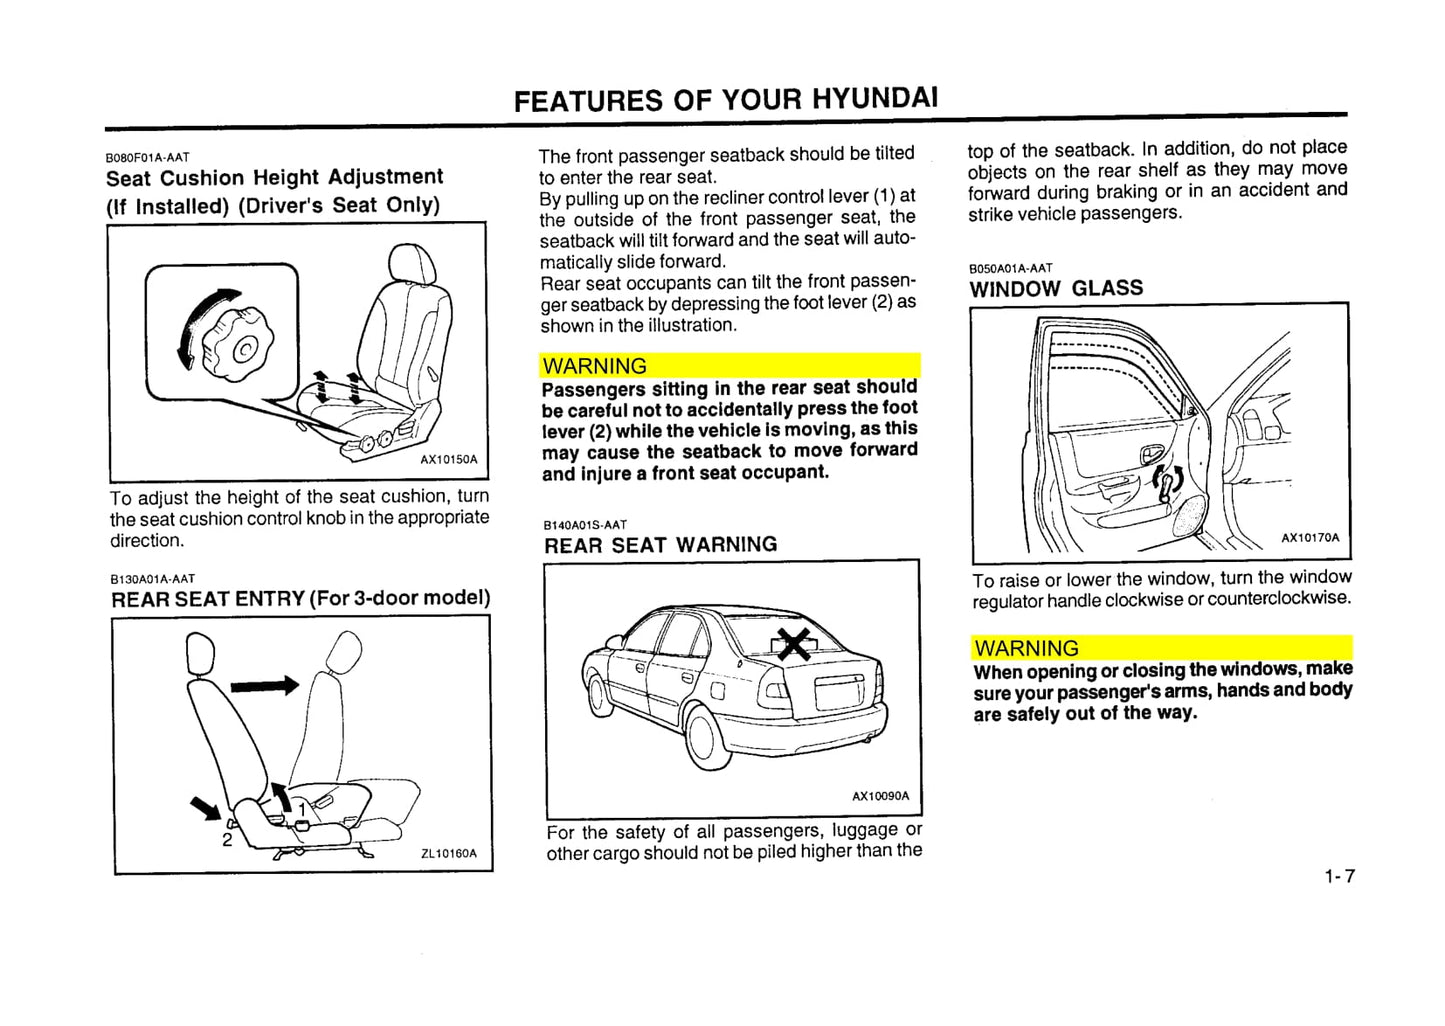 2000 Hyundai Accent Gebruikershandleiding | Engels